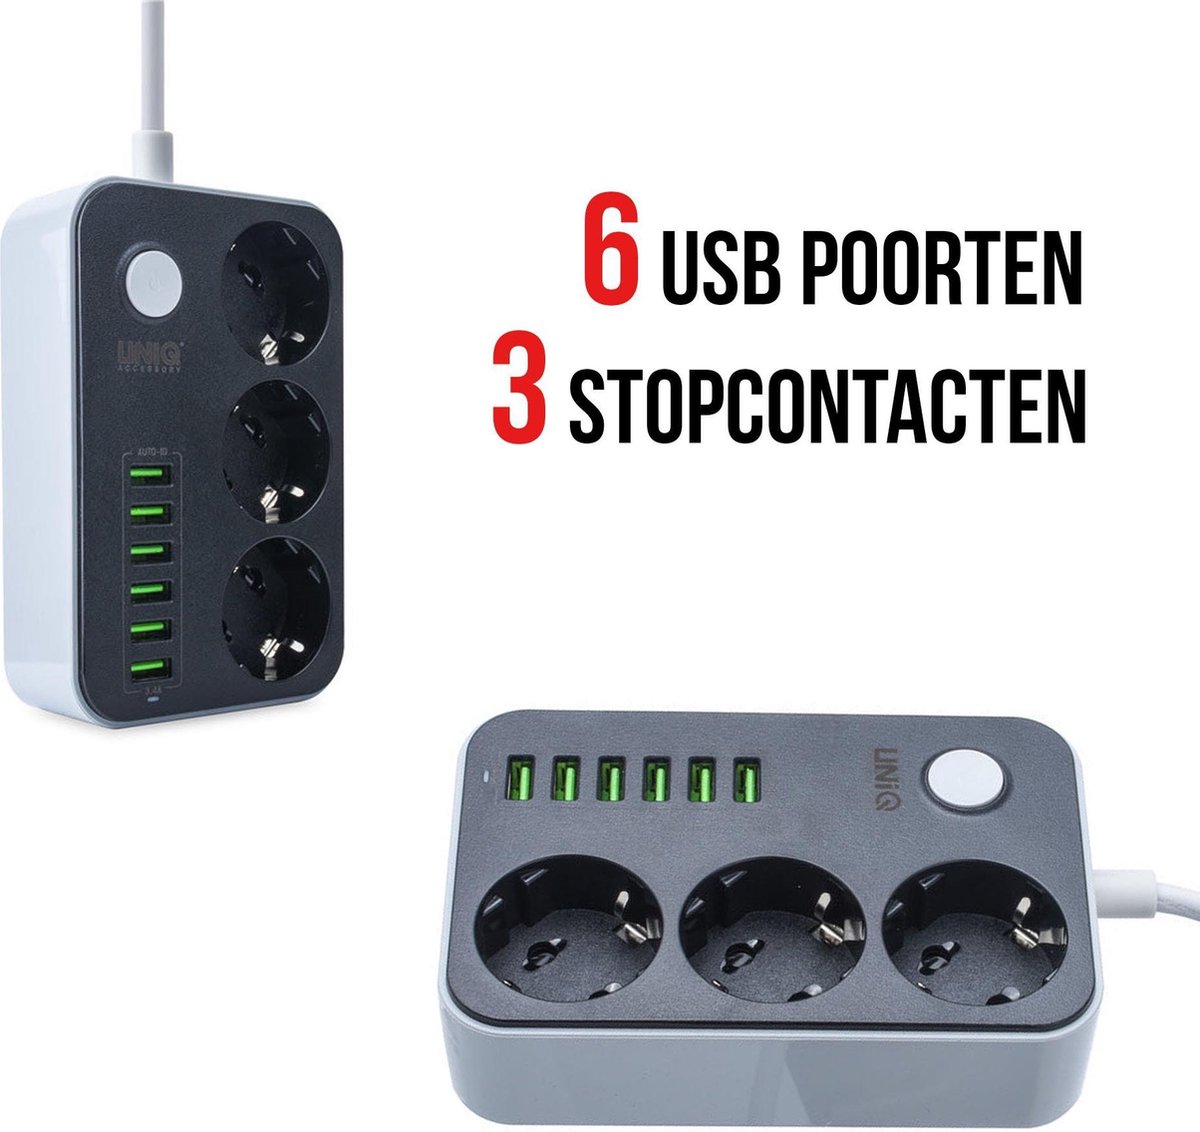 6 USB-poorten, 3 stopcontacten en een snoer van 1,6 meter voor al uw apparaten